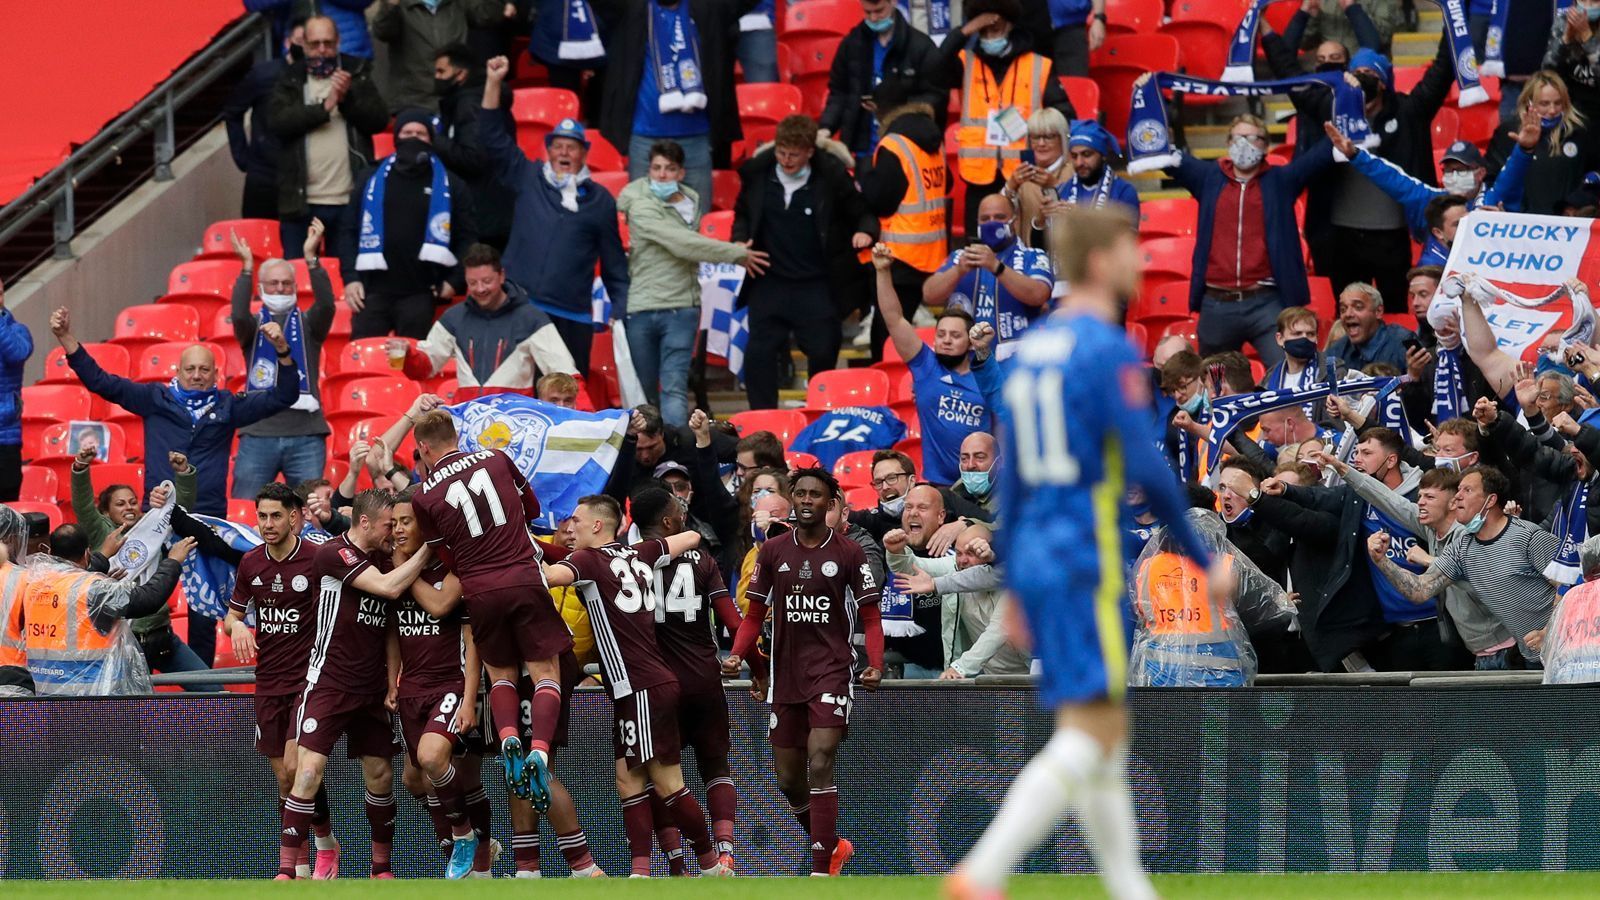 
                <strong>Die besten Bilder zum FA-Cup-Finale</strong><br>
                Leicester City ist FA-Cup-Sieger 2021. Die "Foxes" bezwangen den FC Chelsea in einem emotionalen Endspiel im Londoner Wembleystadion mit 1:0. 21.000 Fans feierten den Triumph von Leicester mit.
              